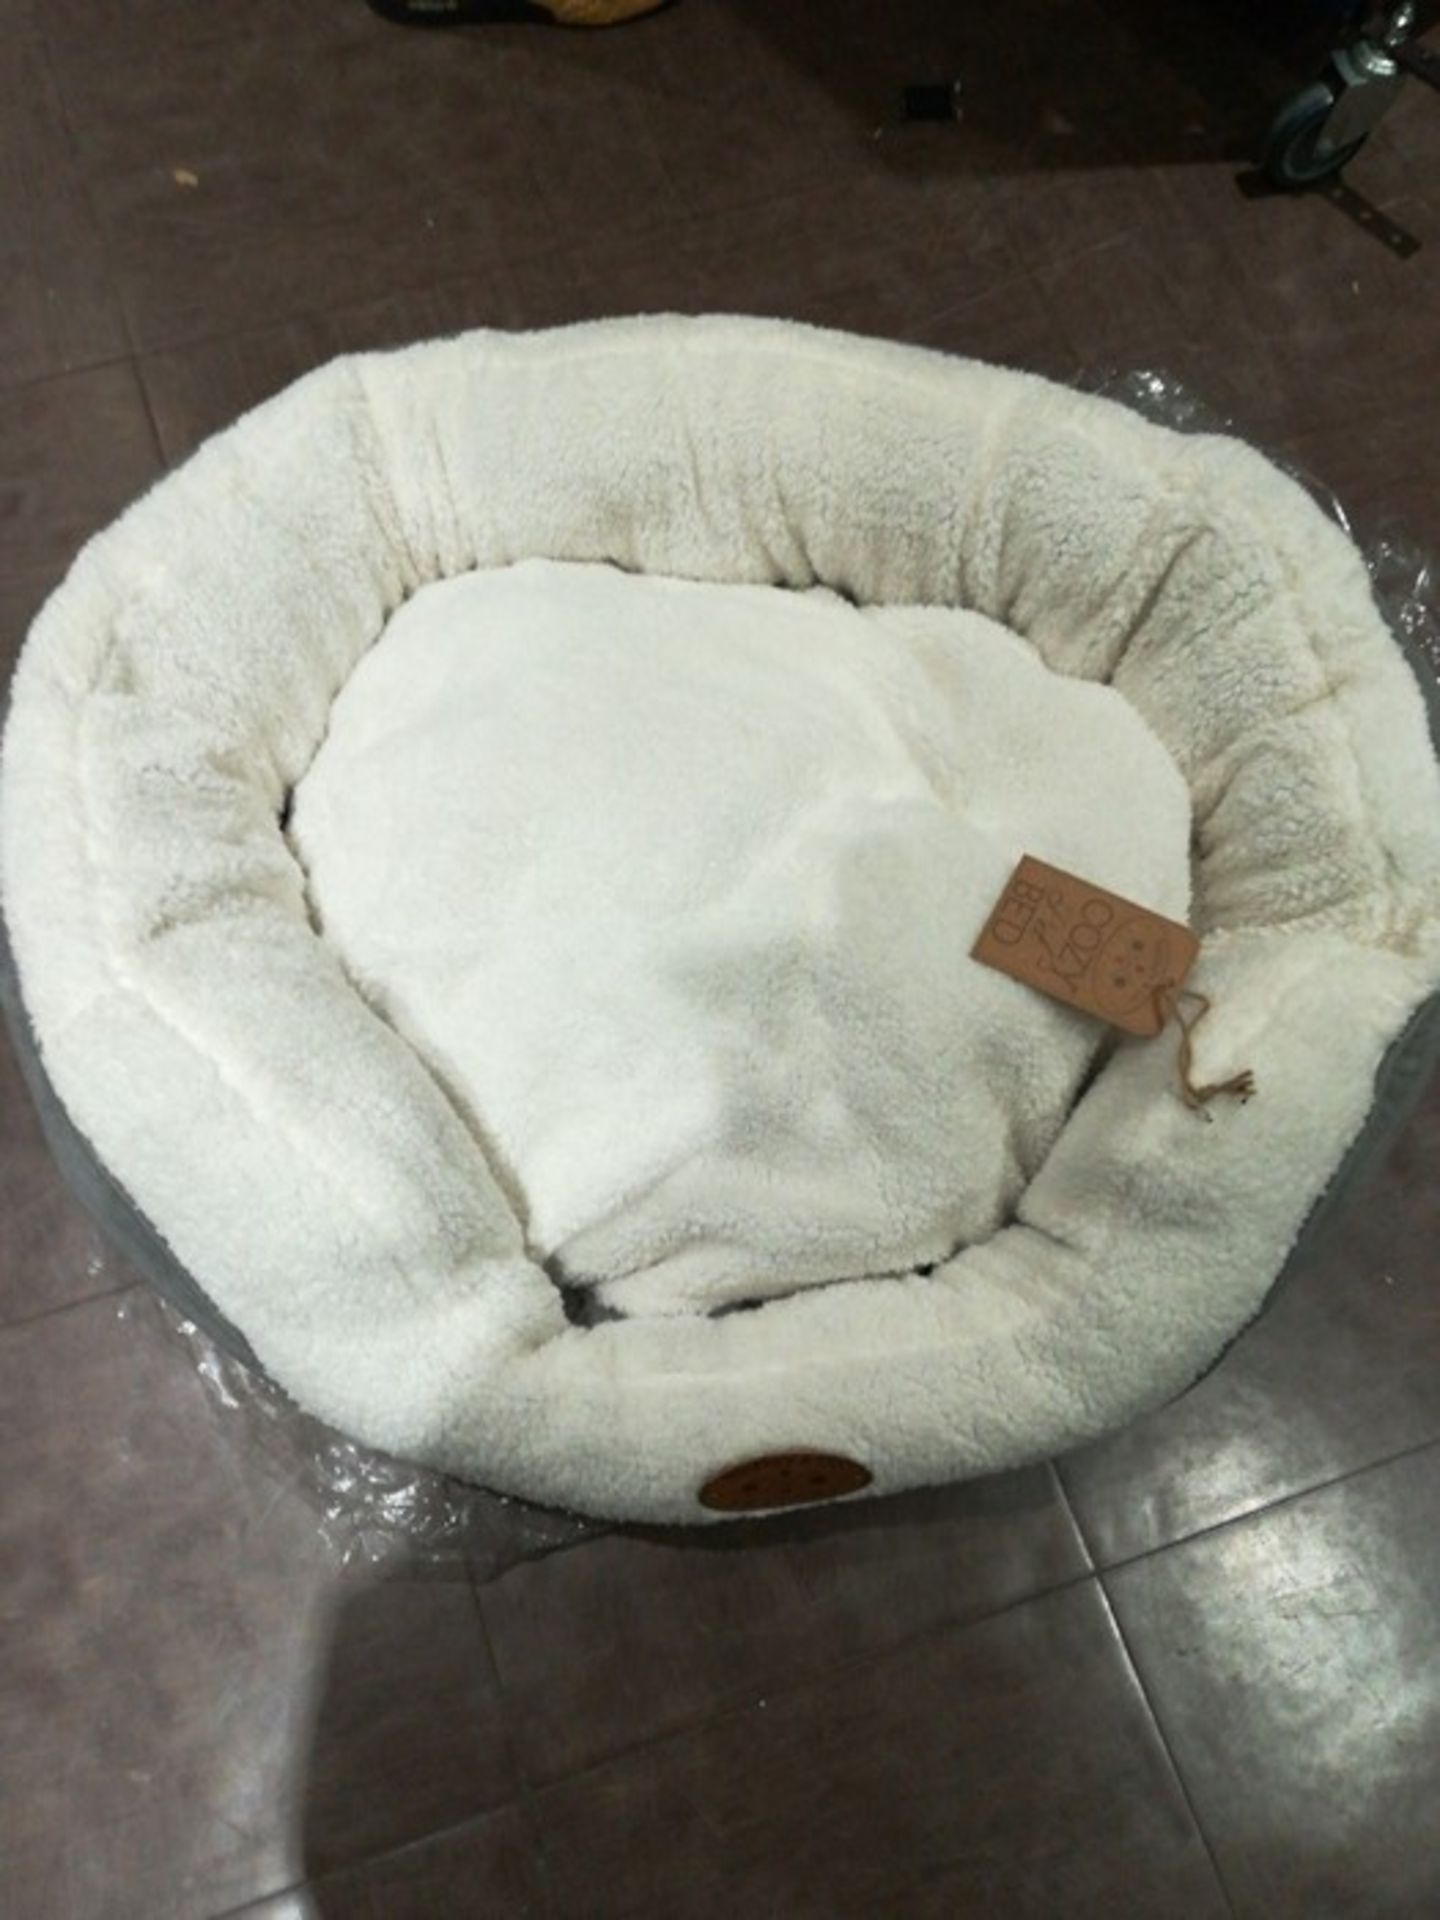 Banbury & Co Luxury Cosy Cat/Dog Bed, Medium - Image 2 of 2